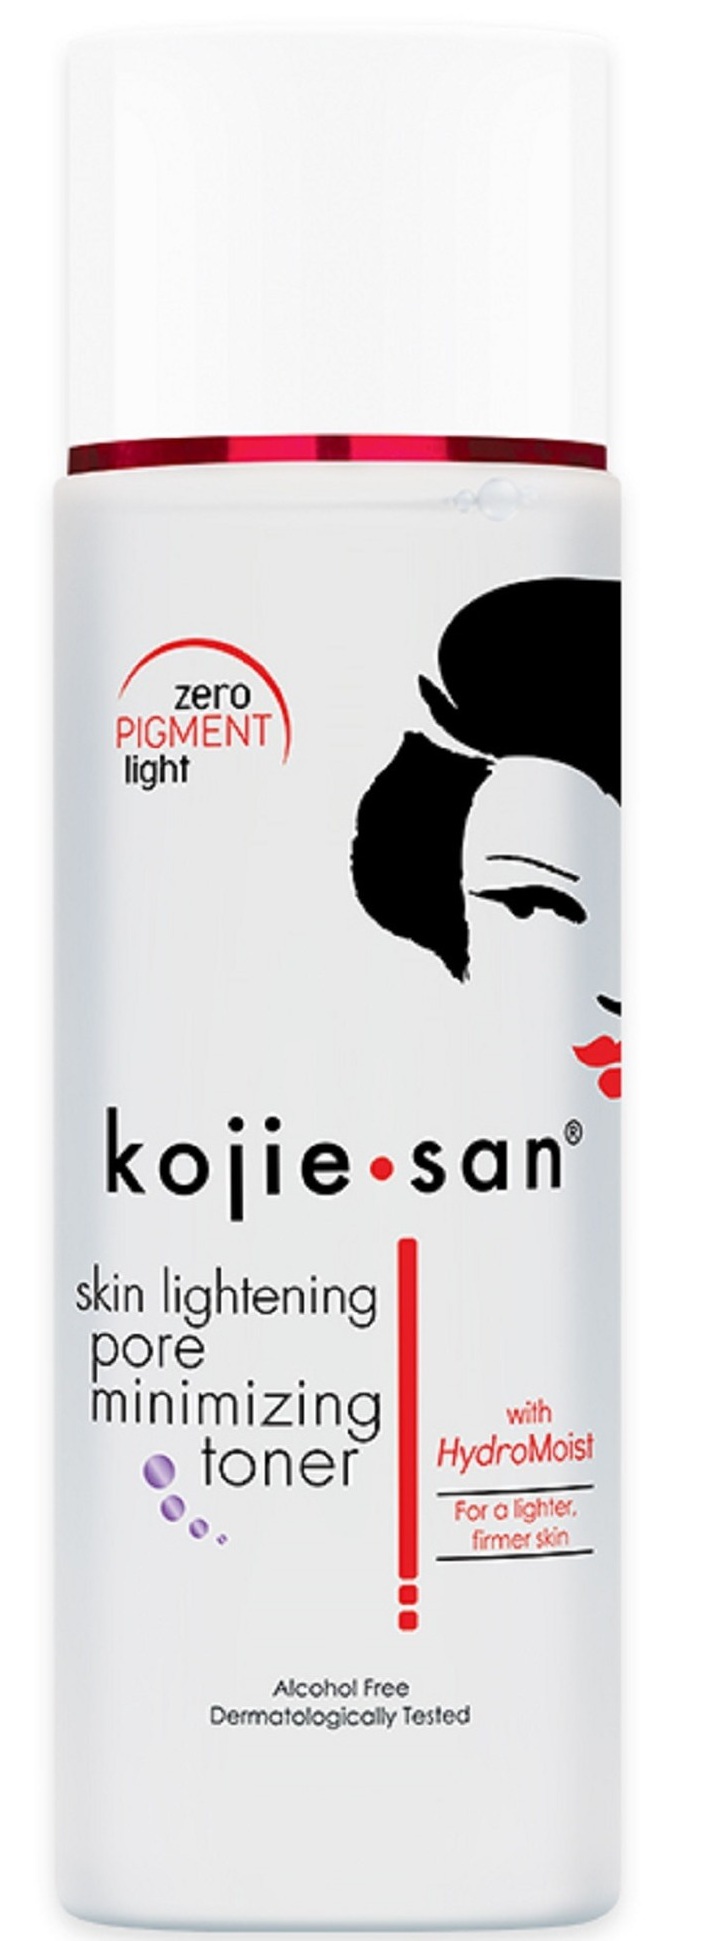 Kojie san Skin Lightening Pore Minimizing Toner